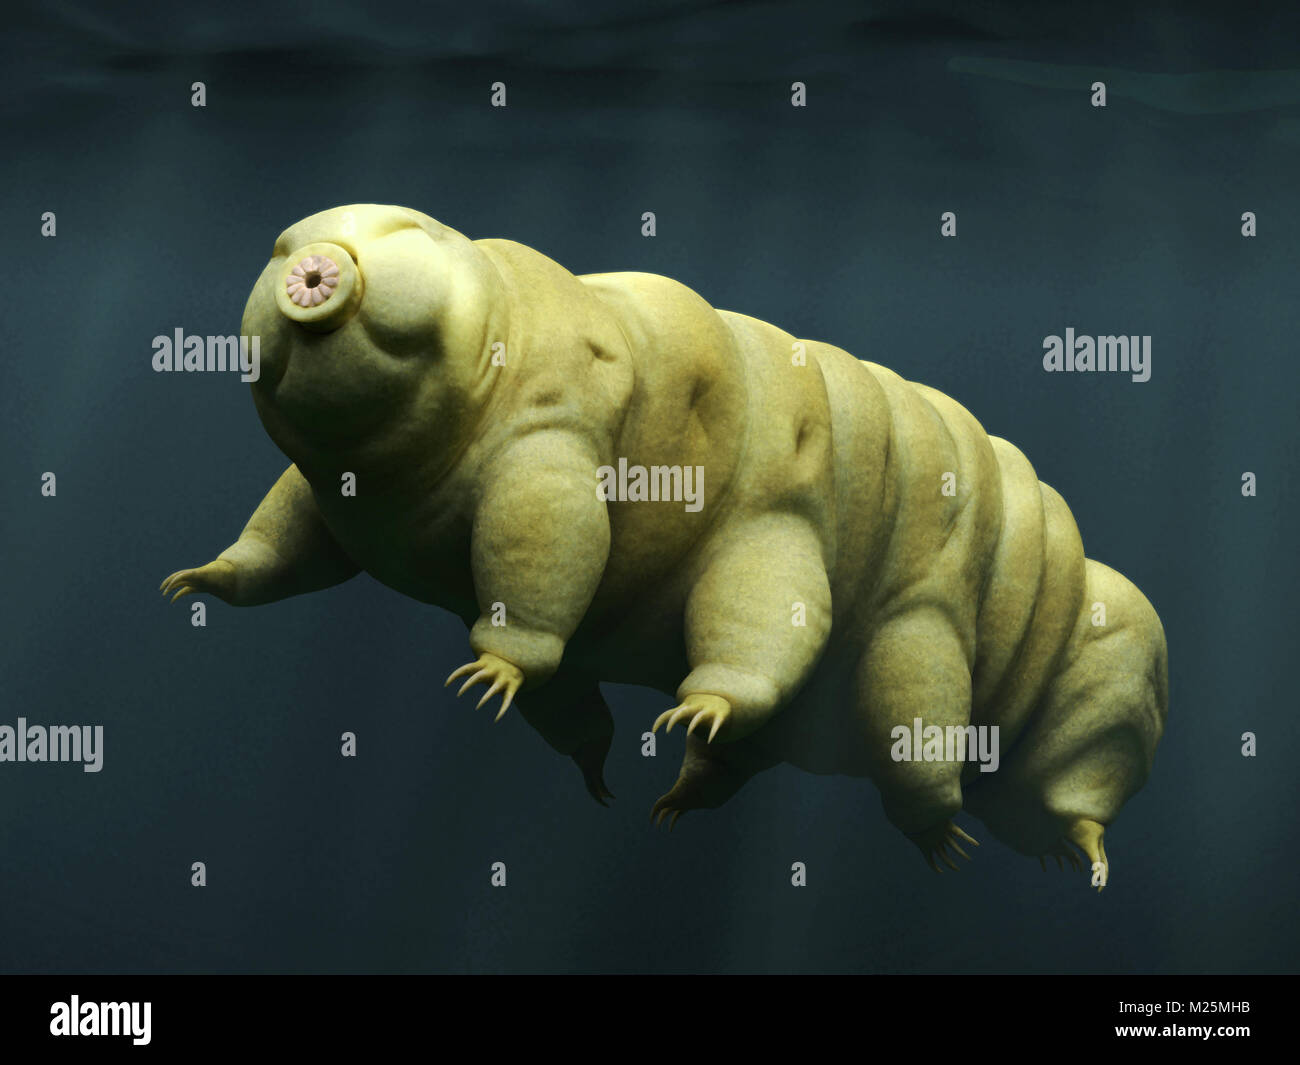 tardigrade, swimming water bear Stock Photo